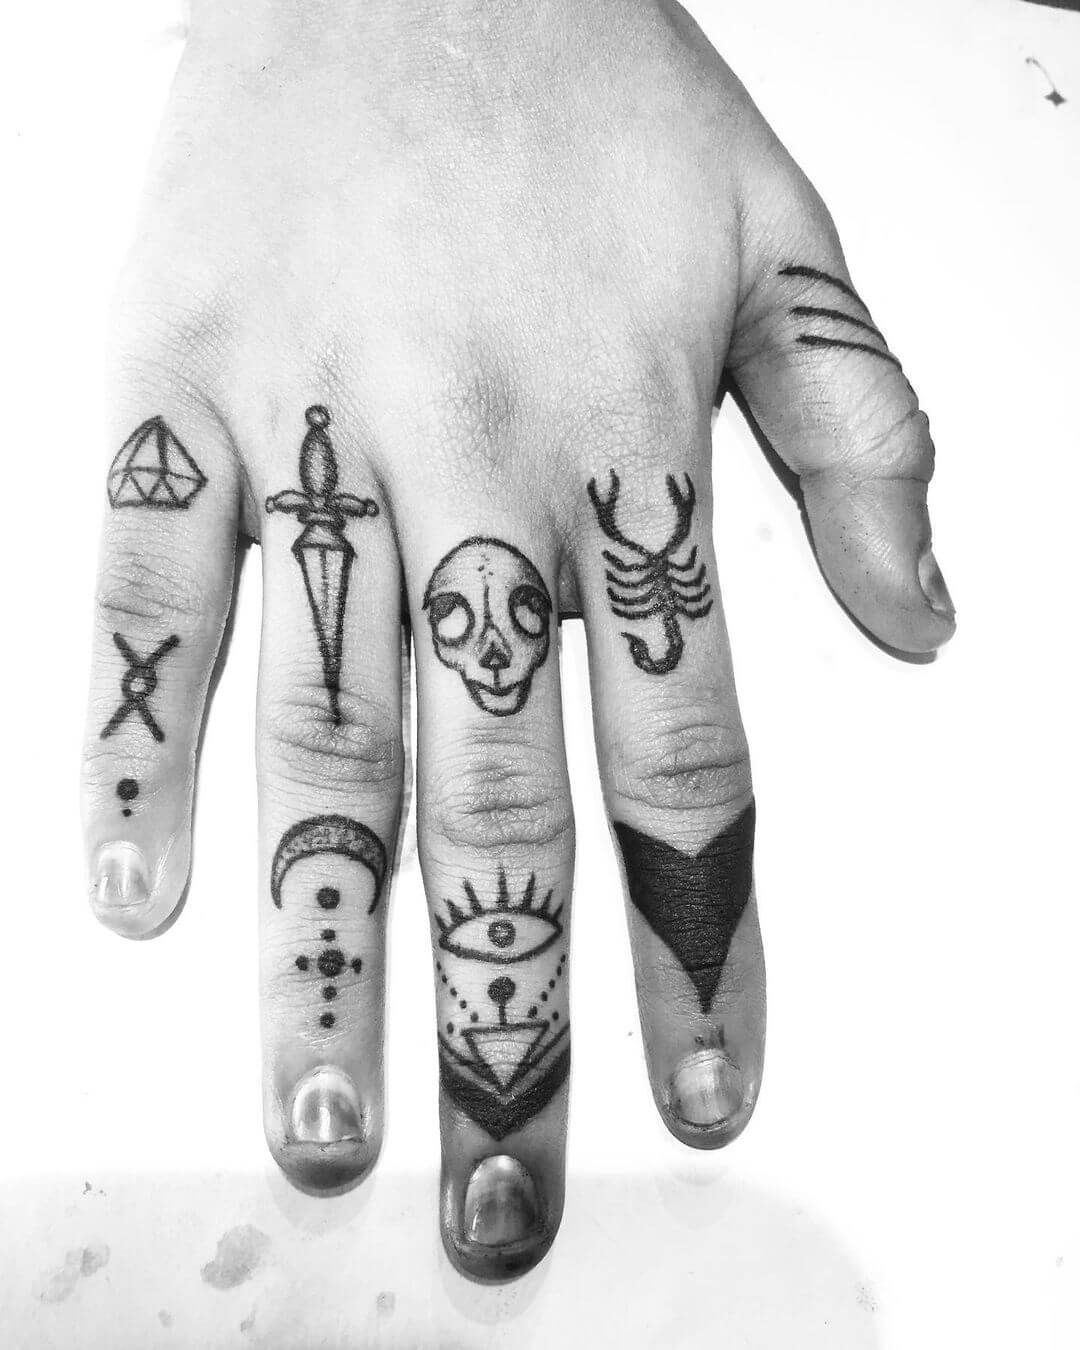 Finger Tattoos For Men 2021 | Small Finger Tattoos | Tattoo Ideas For Men  2021 | New Men's Styles - YouTube